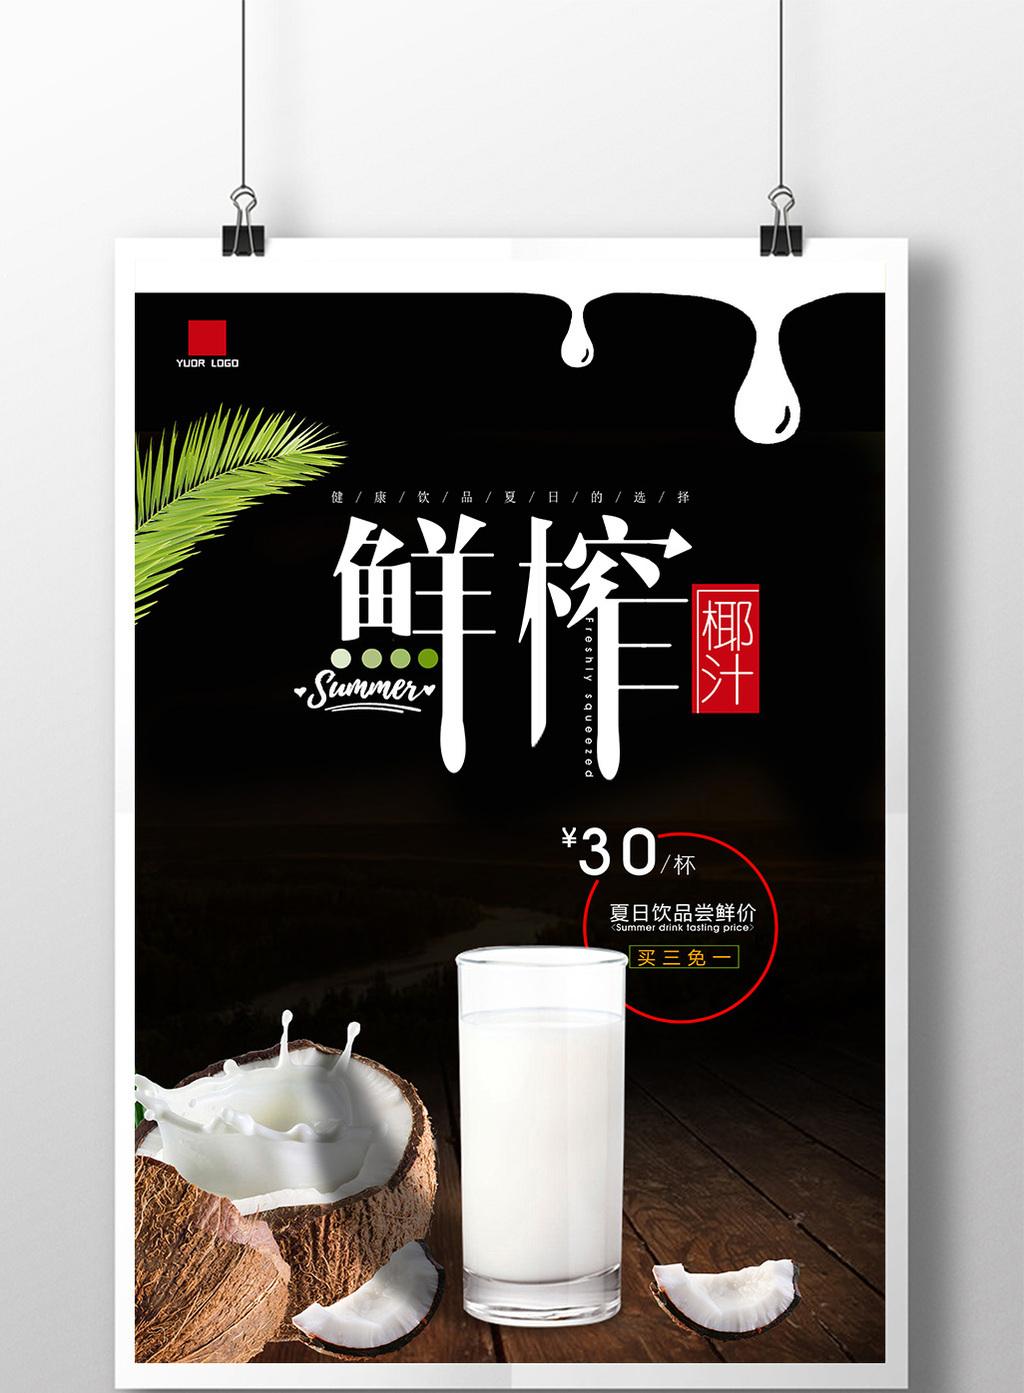 包图 广告设计 海报 > 鲜榨椰汁海报鲜榨椰子汁海报设计  上传时间